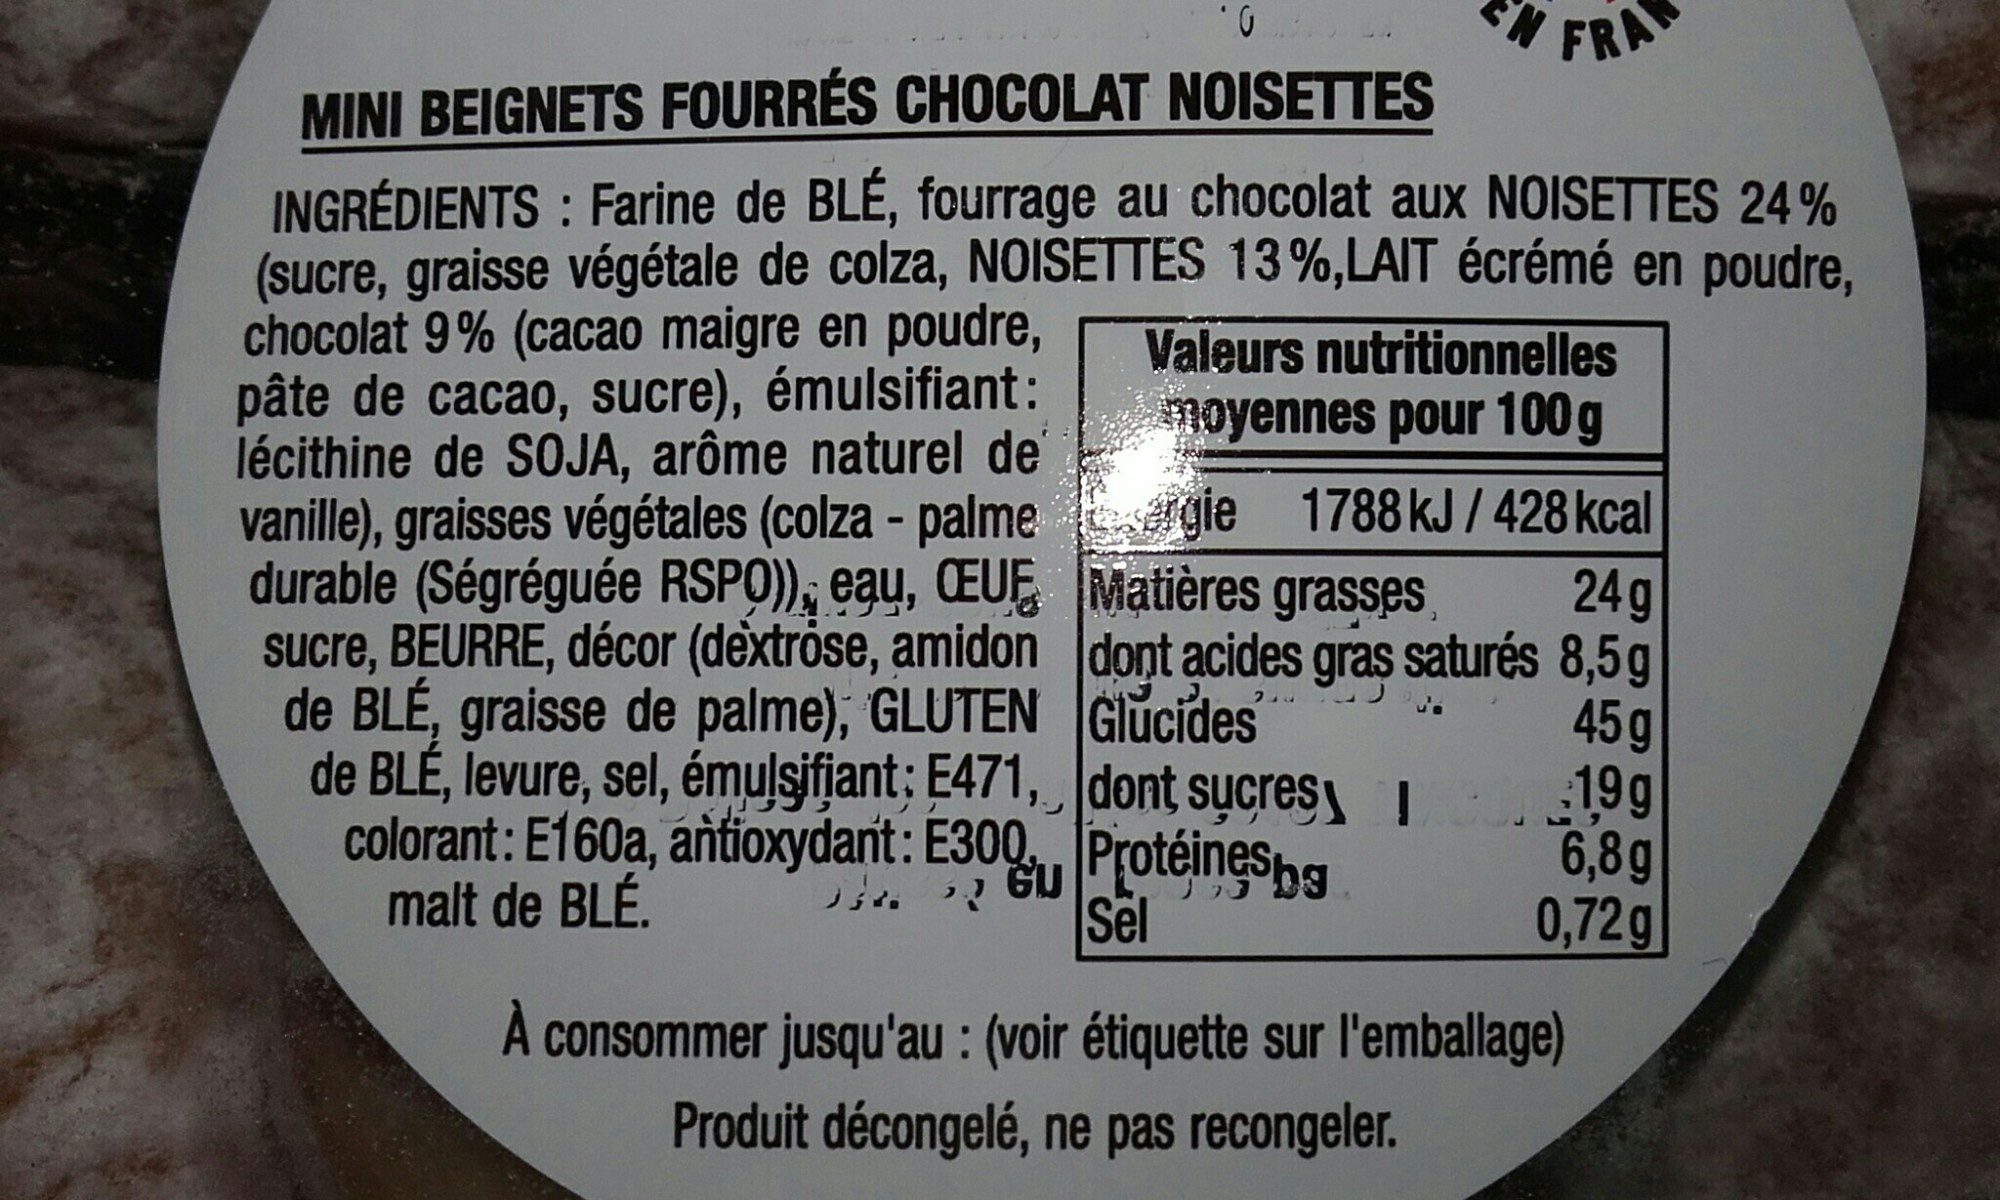 8 Mini beignets fourrés - Ingredients - fr